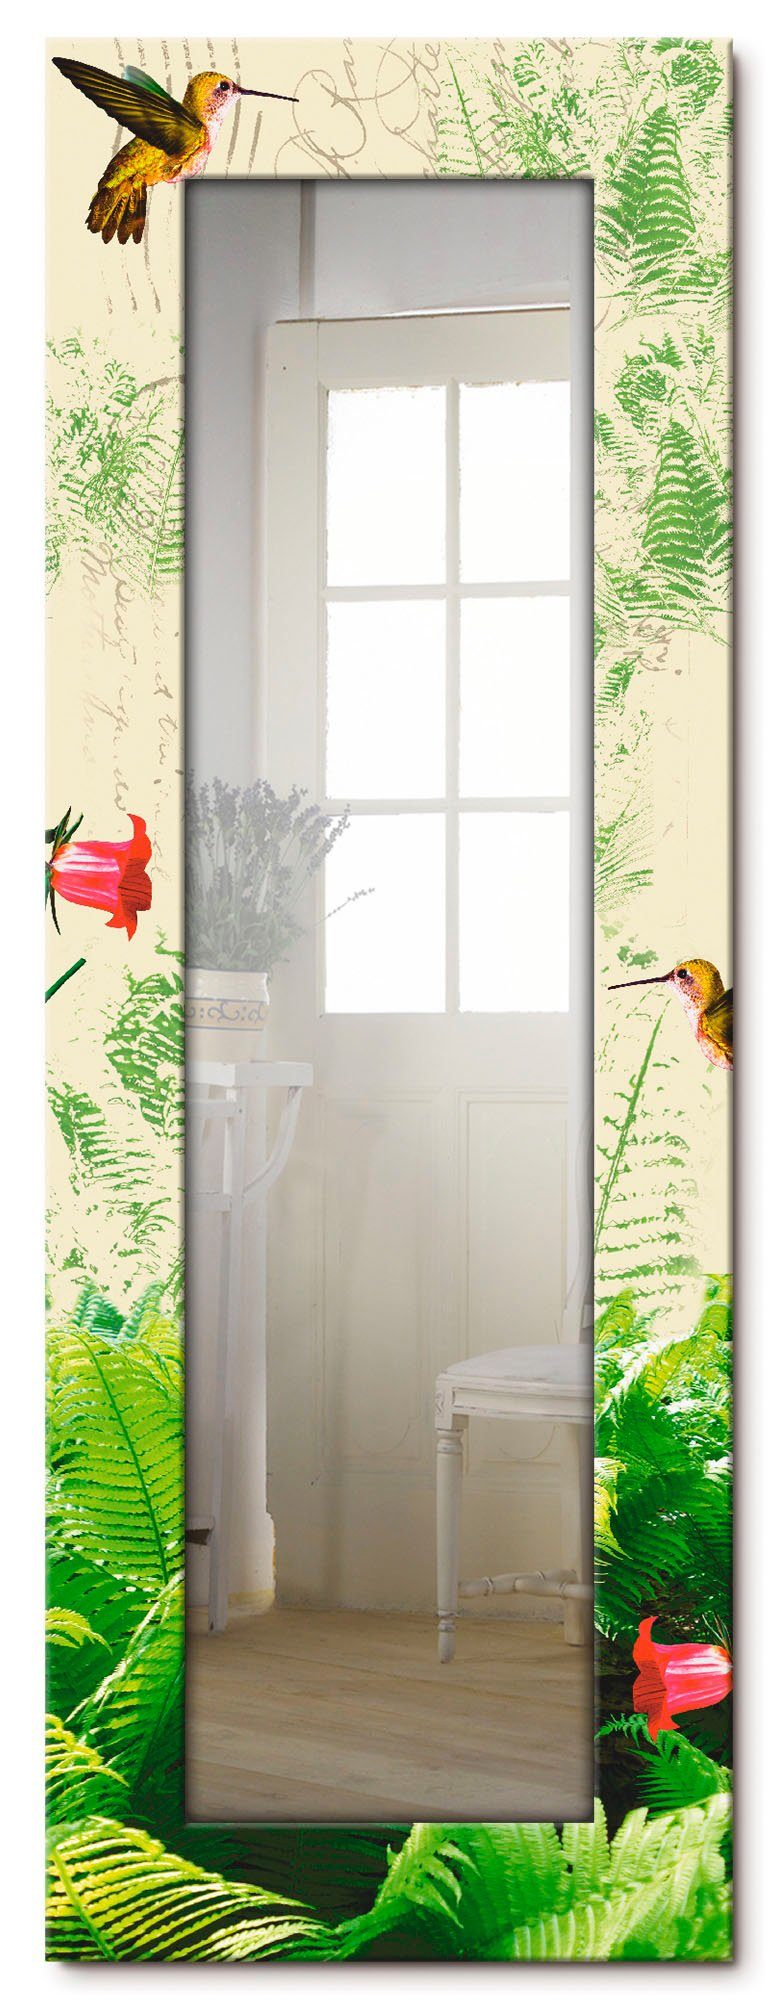 Artland Motivrahmen, Landhaus gerahmter Wandspiegel, Dekospiegel Ganzkörperspiegel, Kolibri, mit